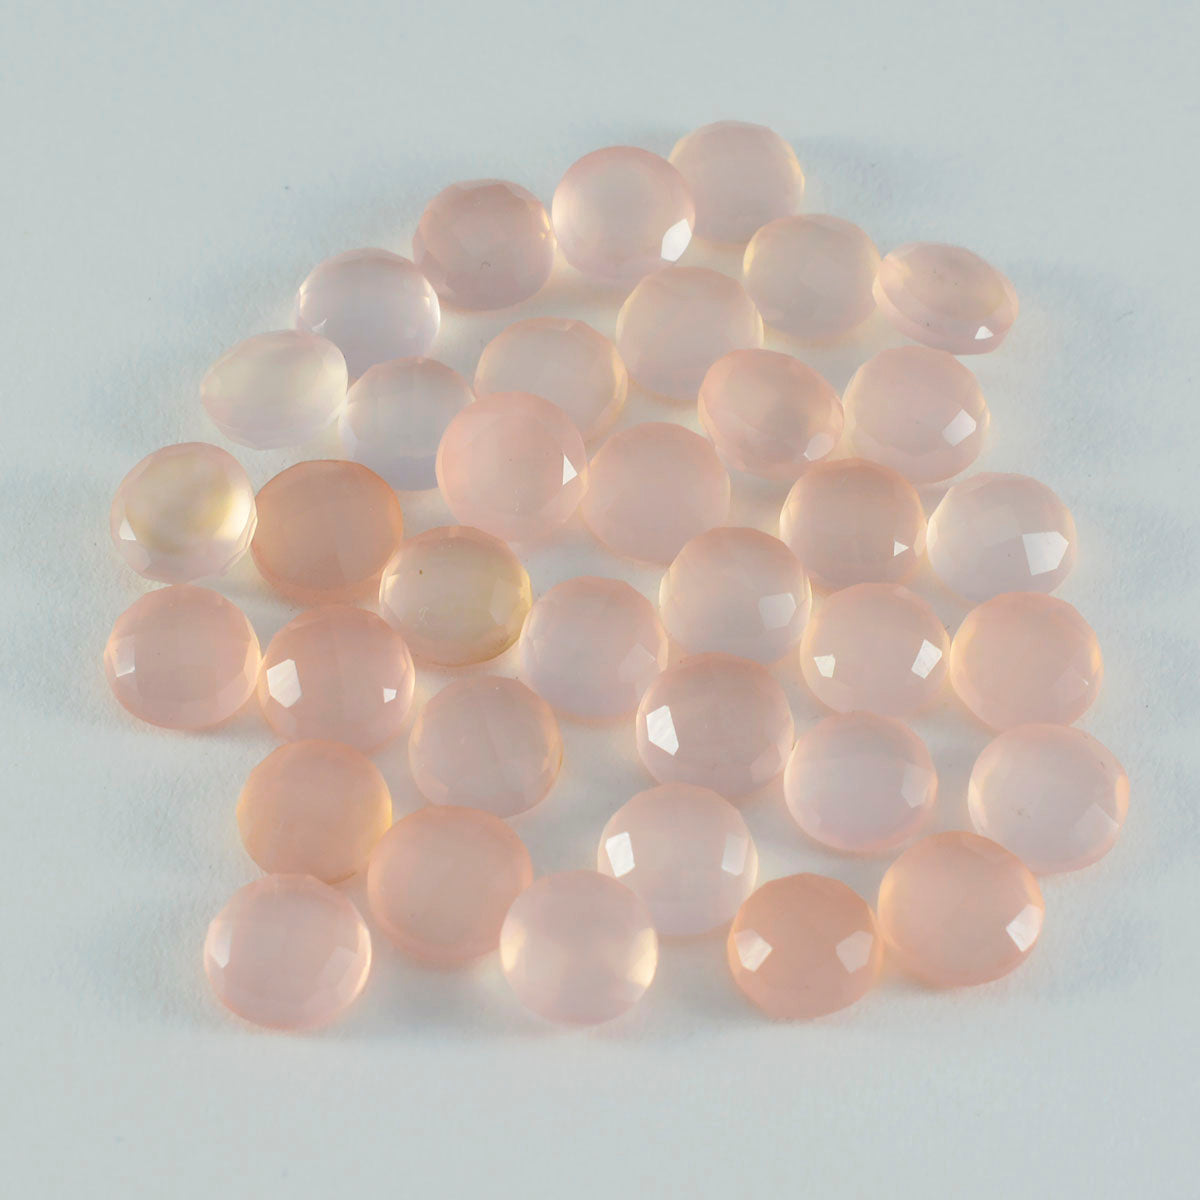 riyogems 1шт розовый кварц ограненный 13x13 мм круглая форма красивый качественный драгоценный камень